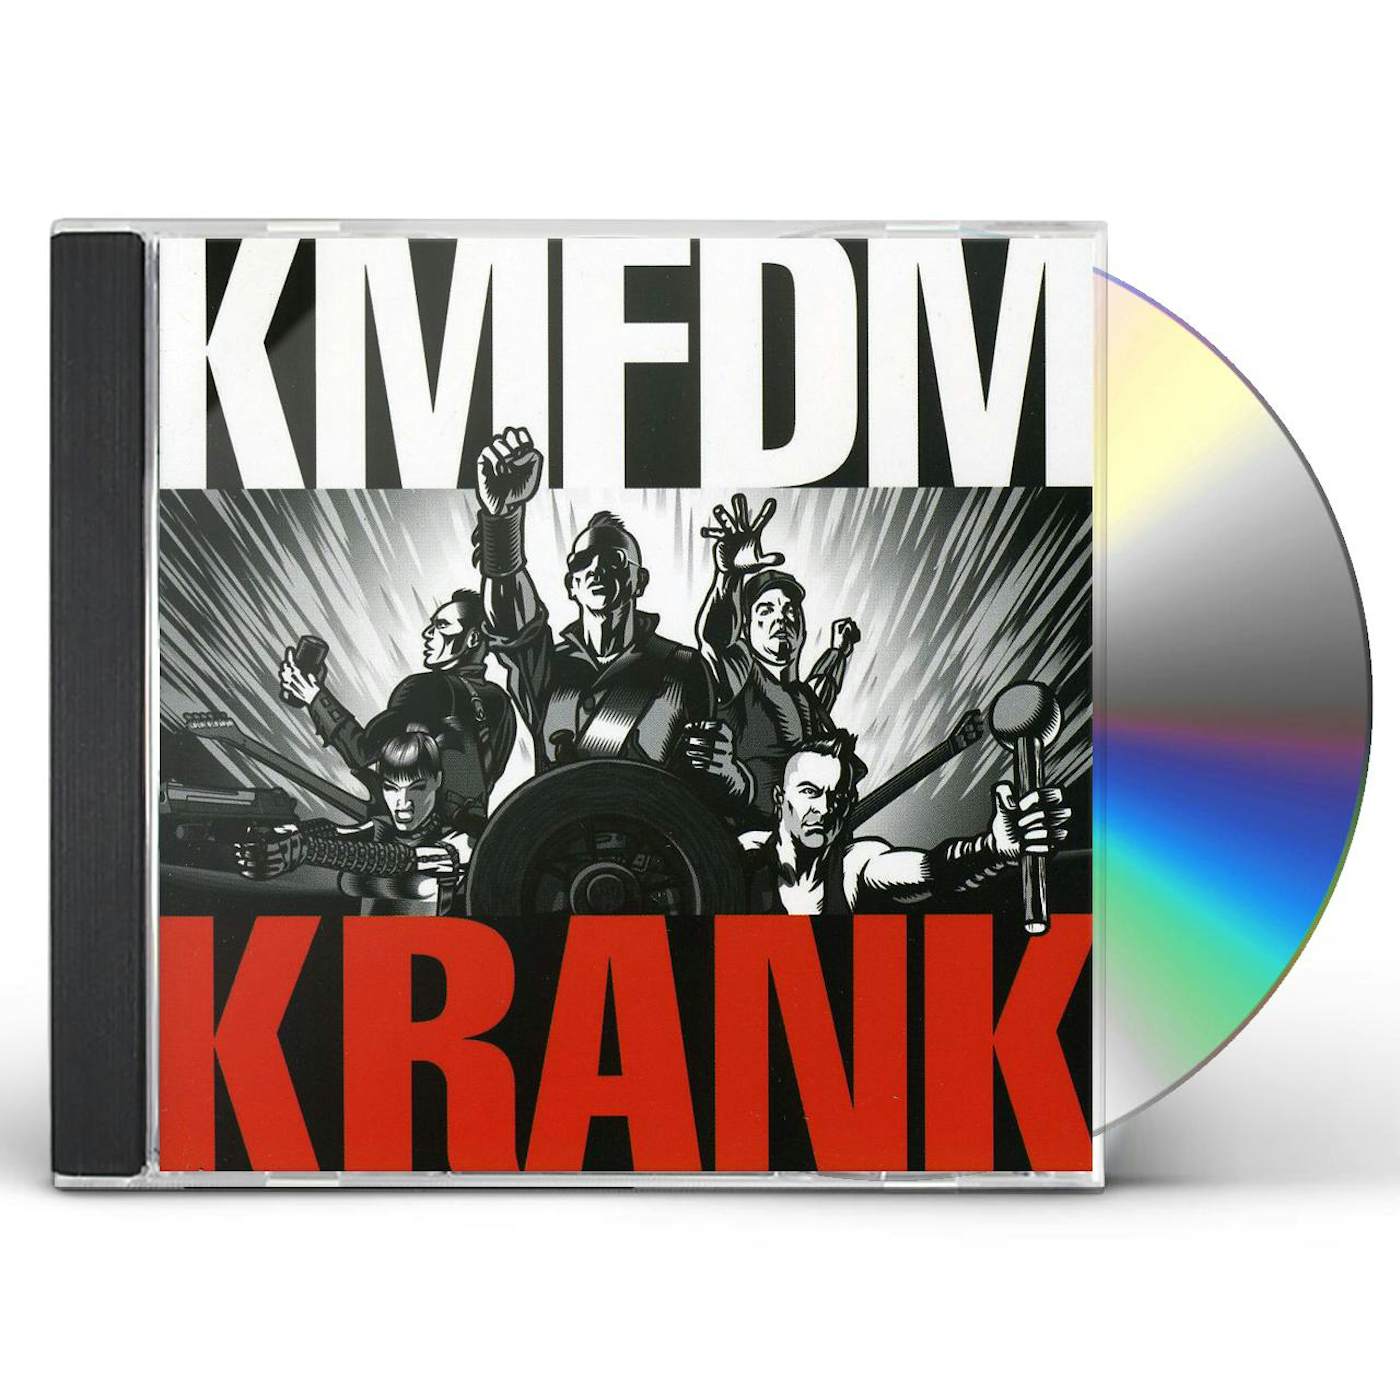 KMFDM KRANK CD